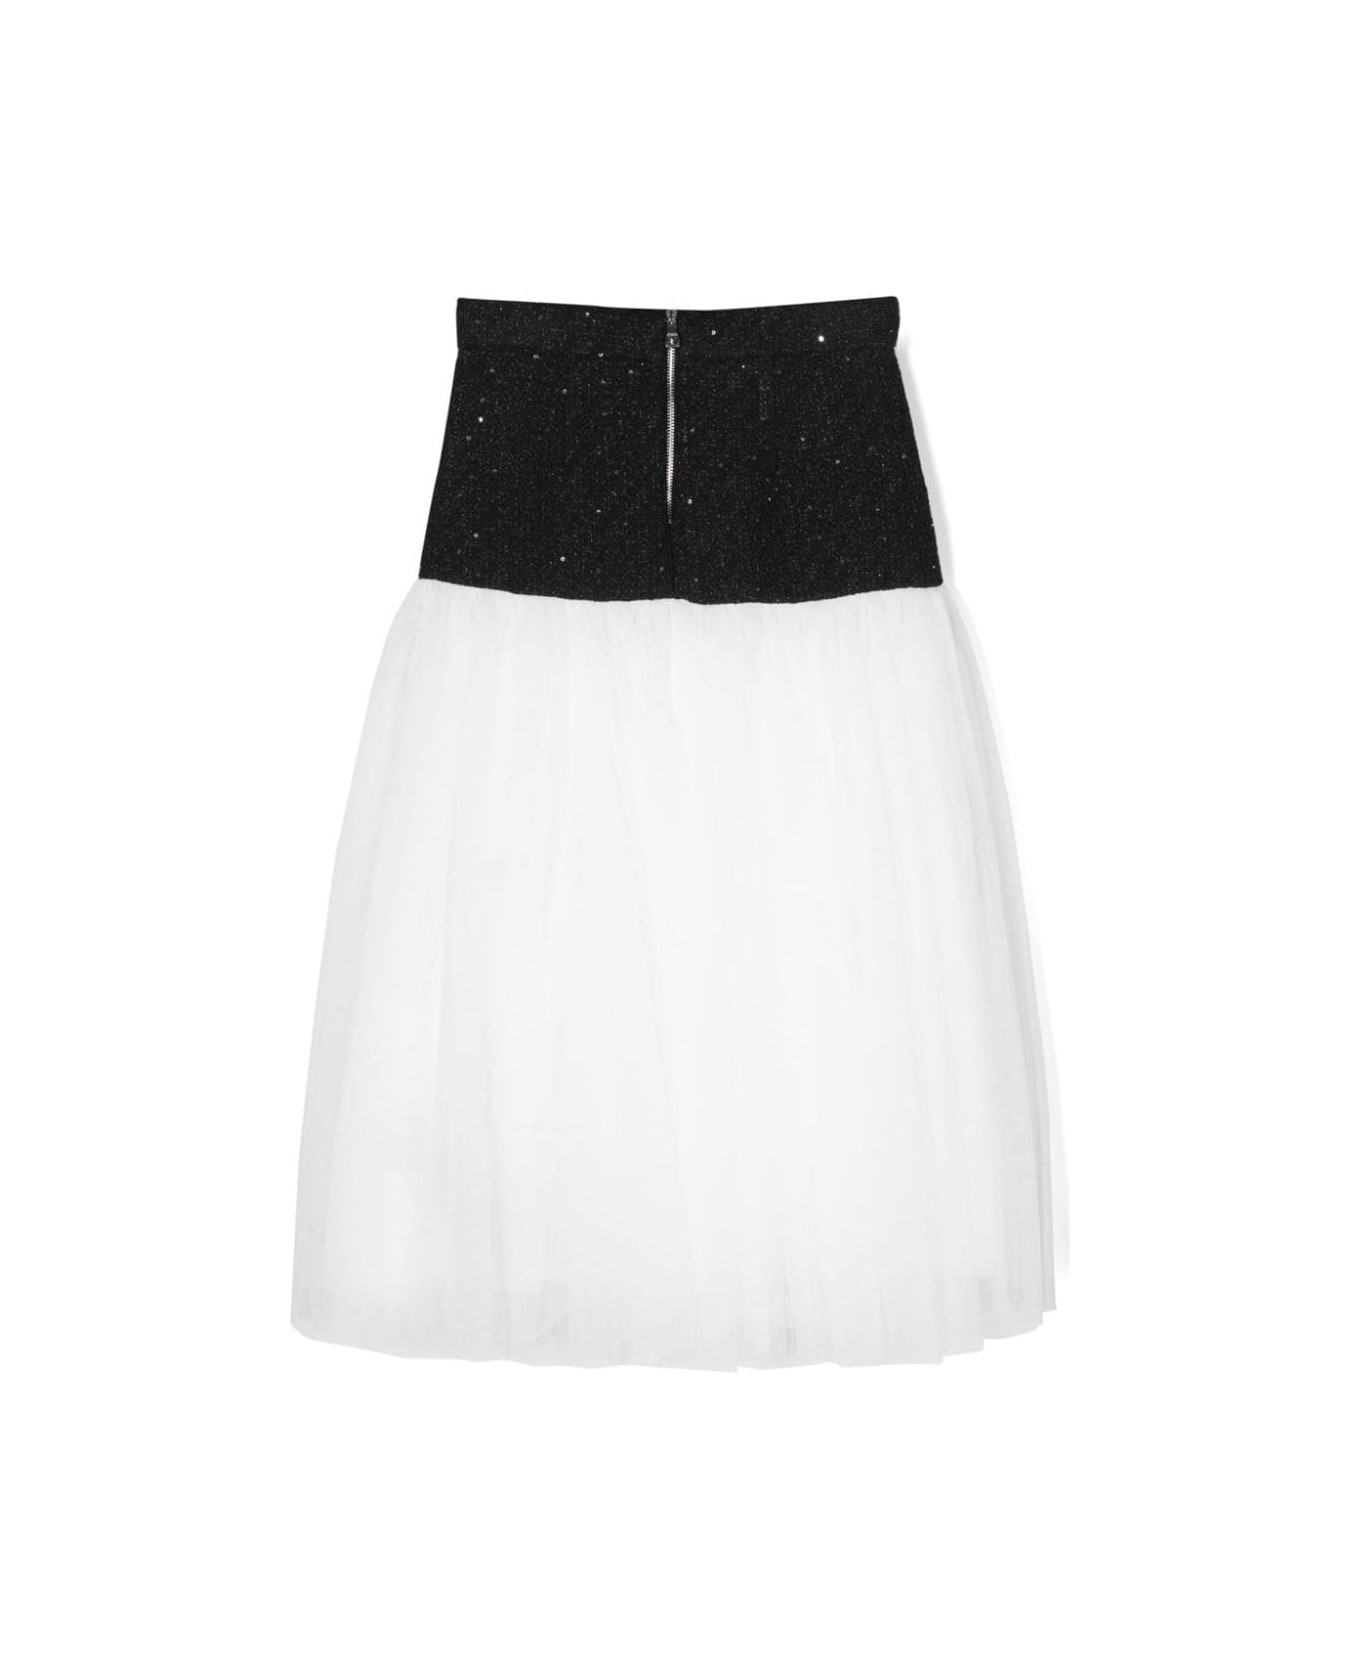 Balmain Skirt With Insert Design - Black